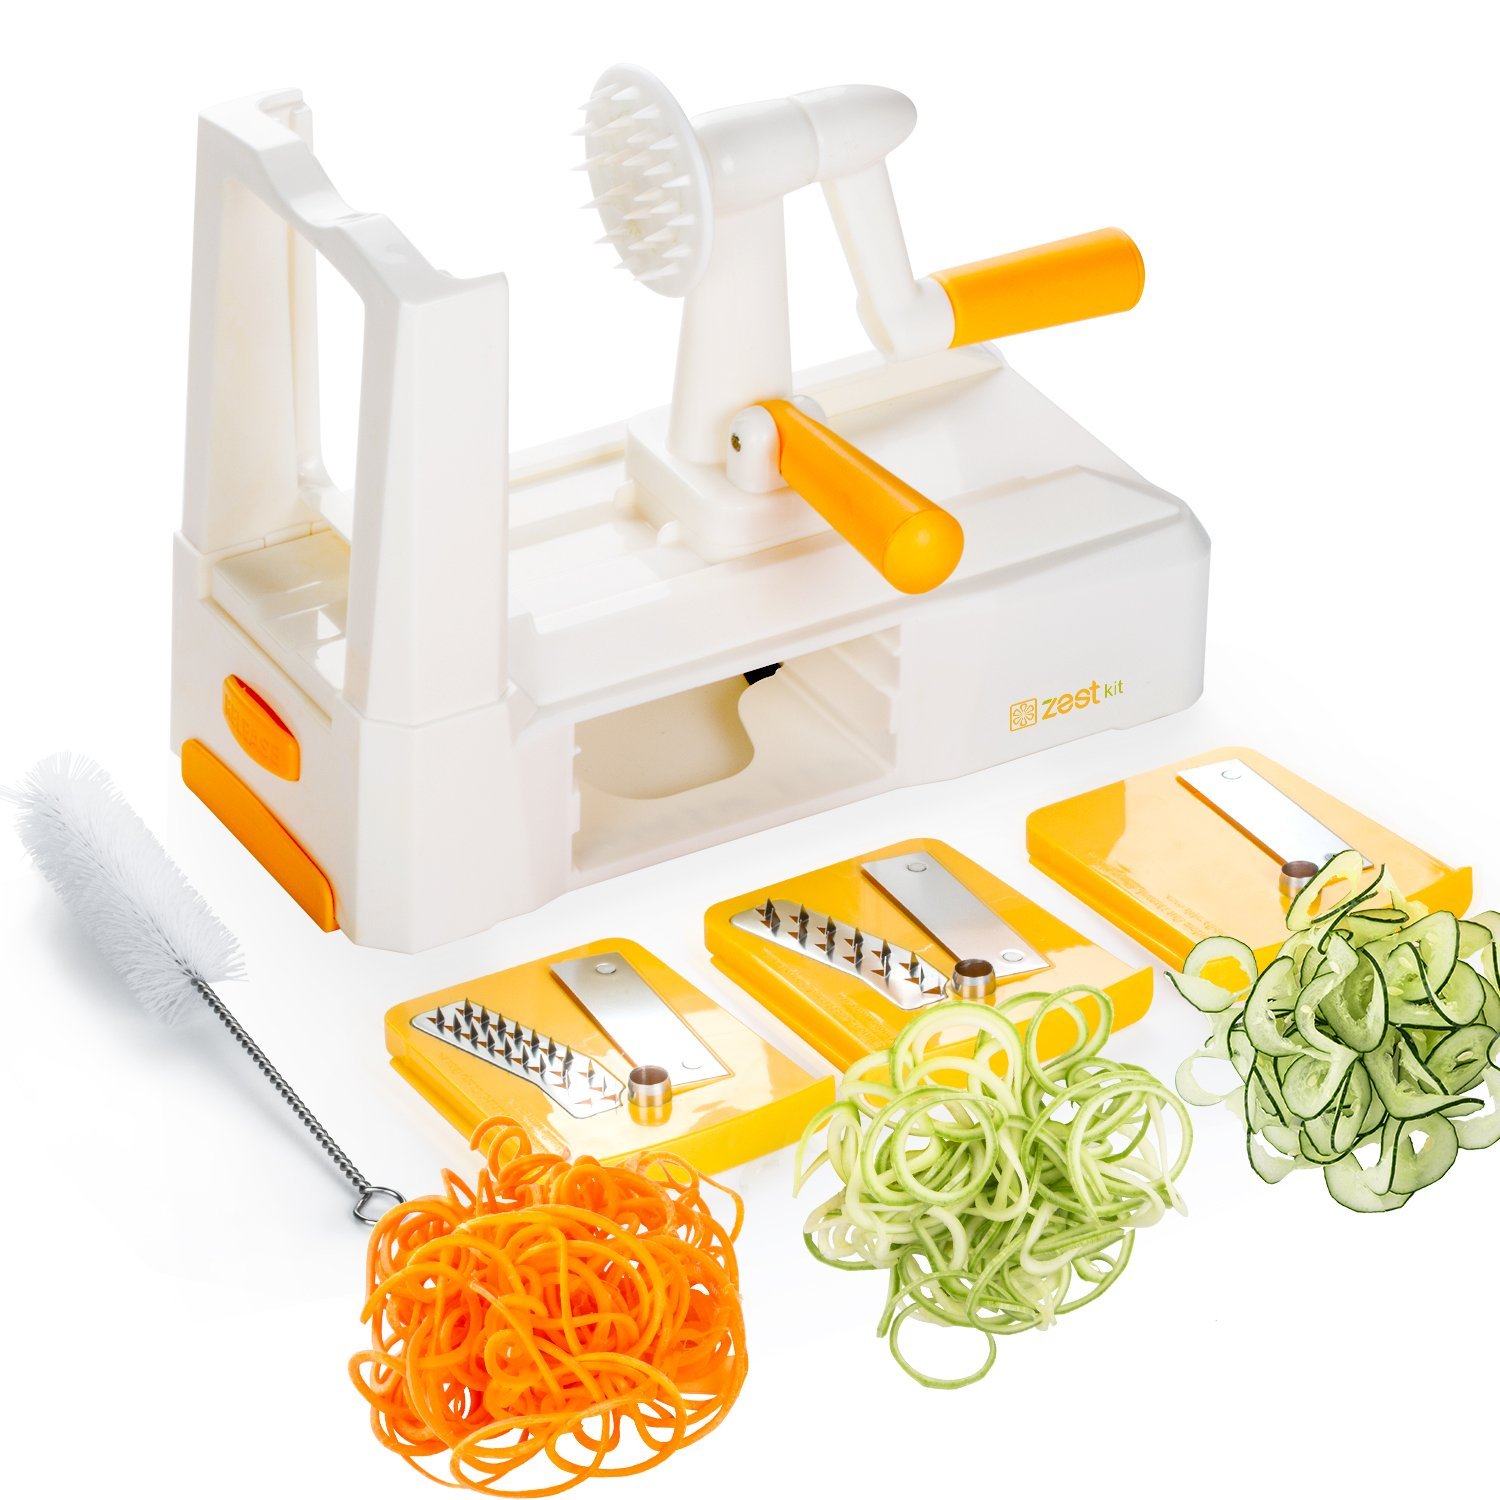 Tri-Blade Vegetable Spiral Slicer – Now Just $15.99!